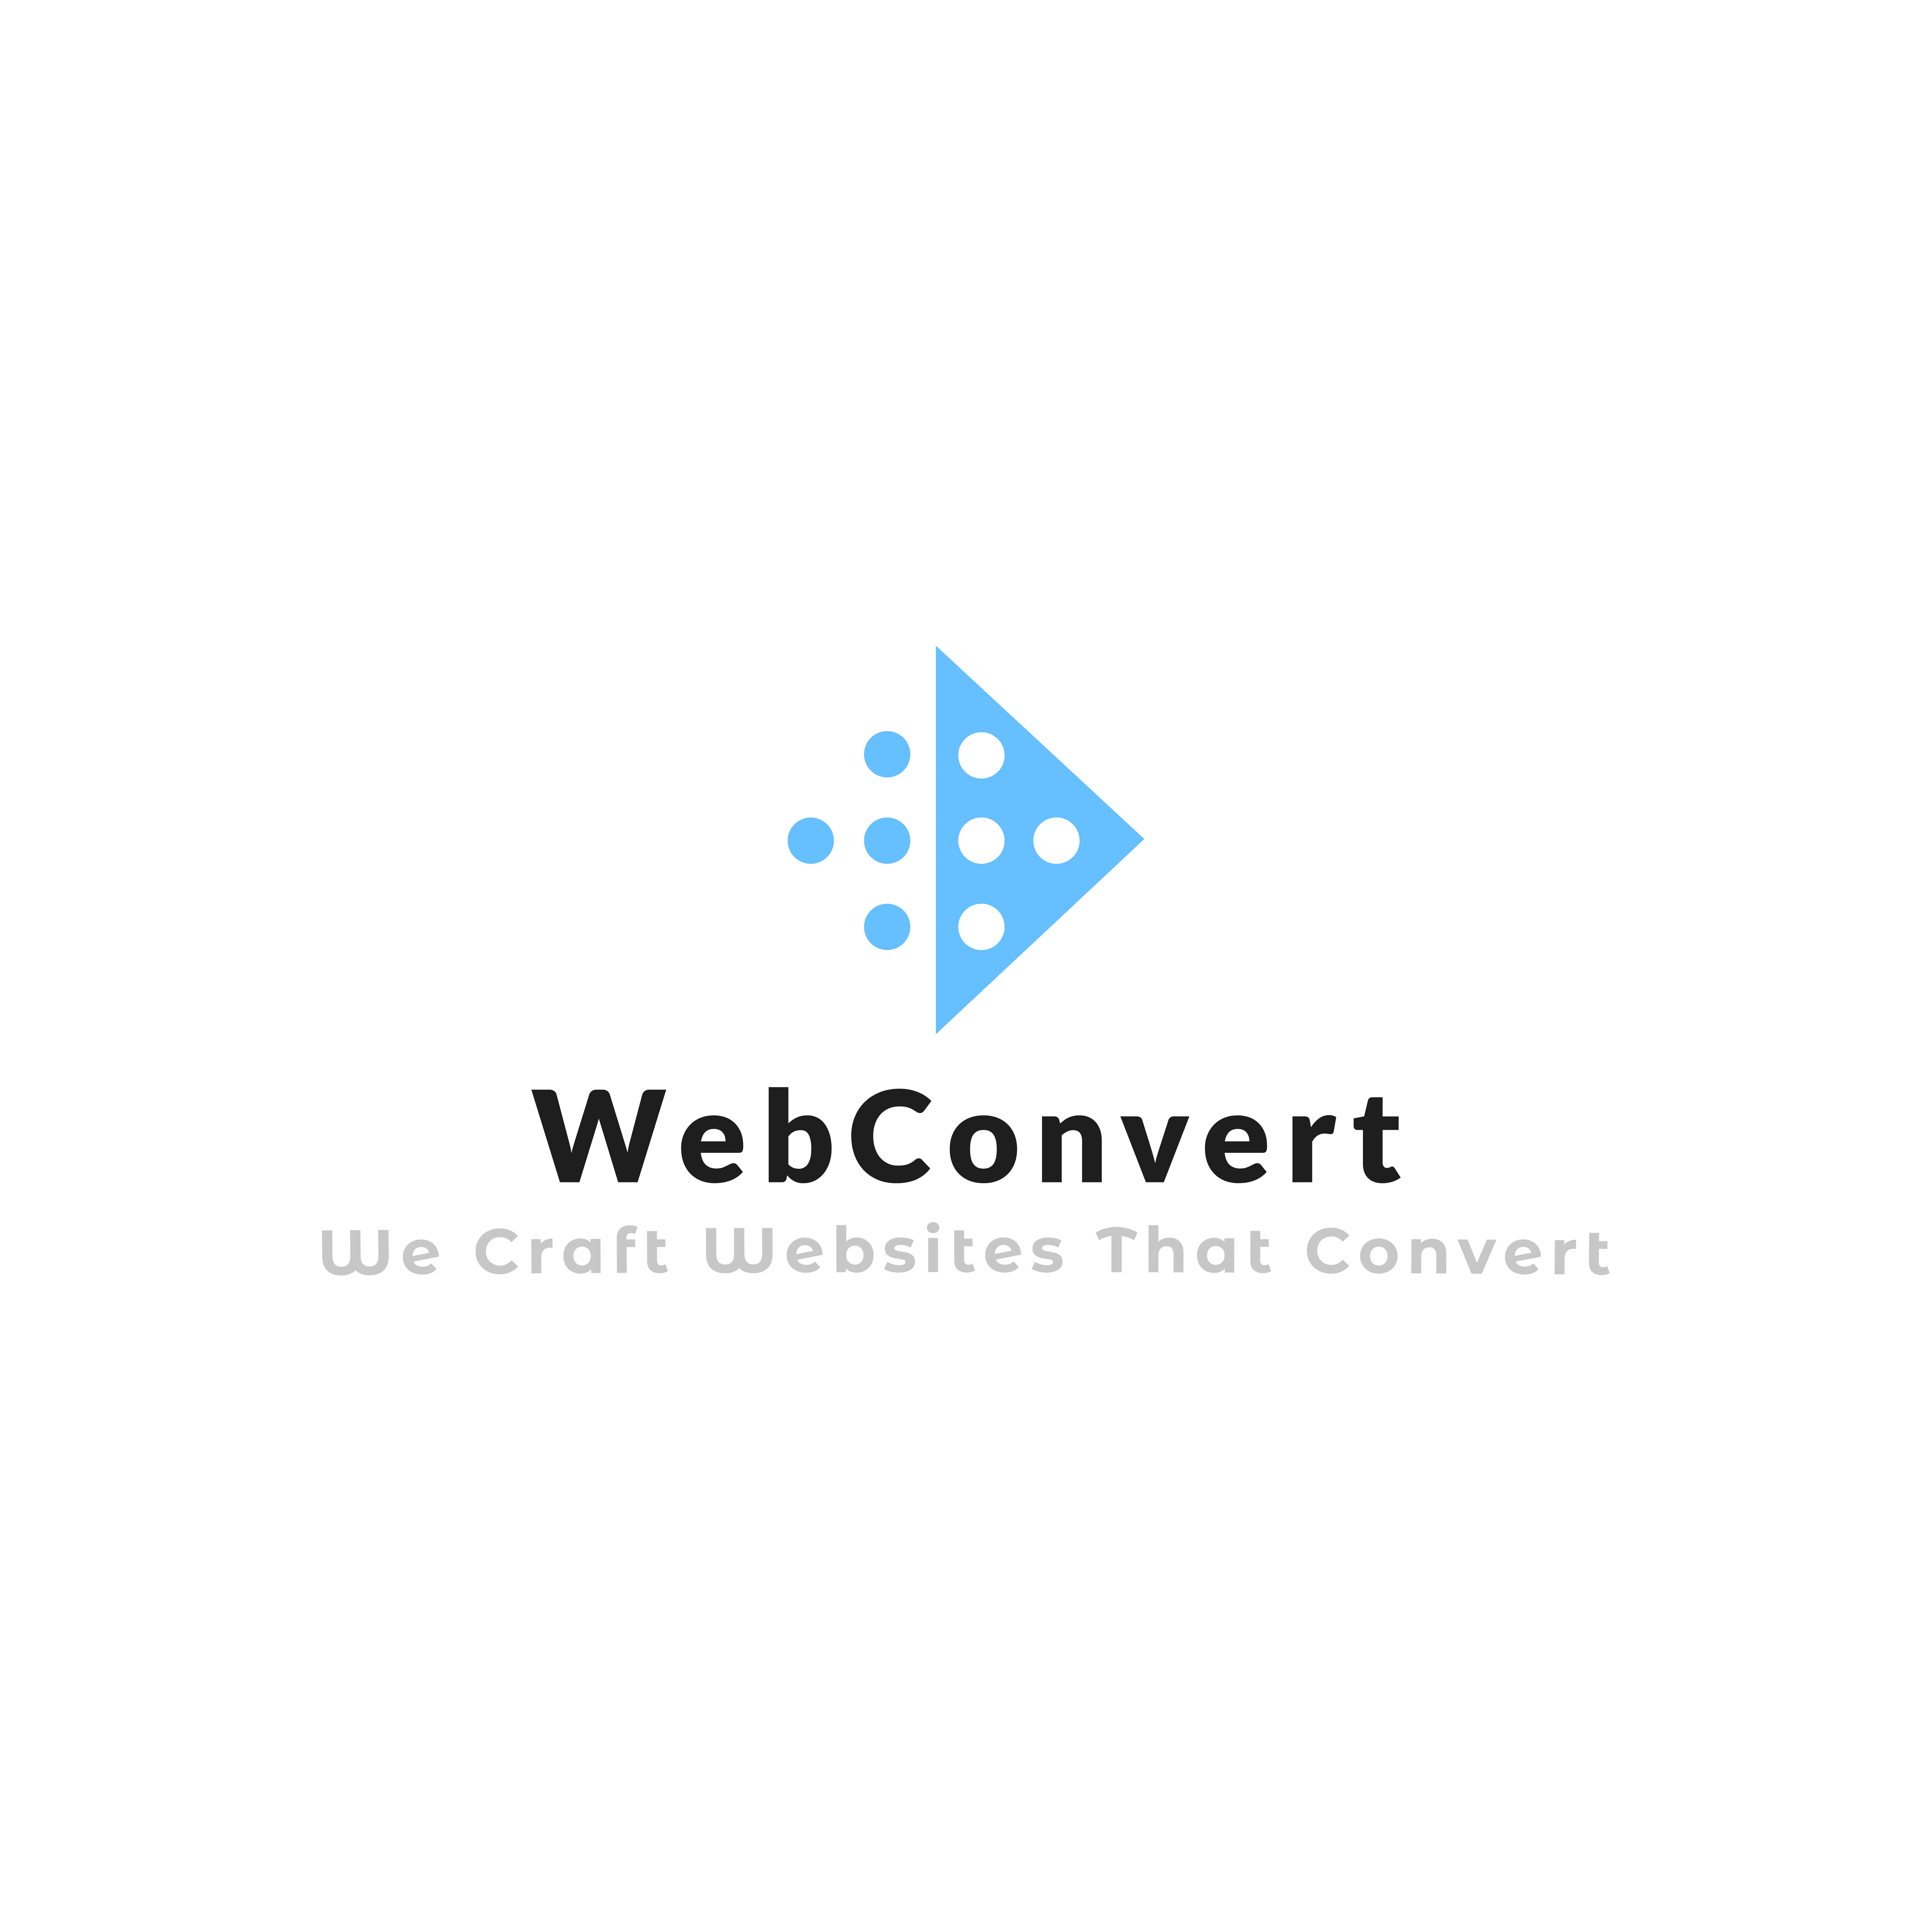 Webconvert